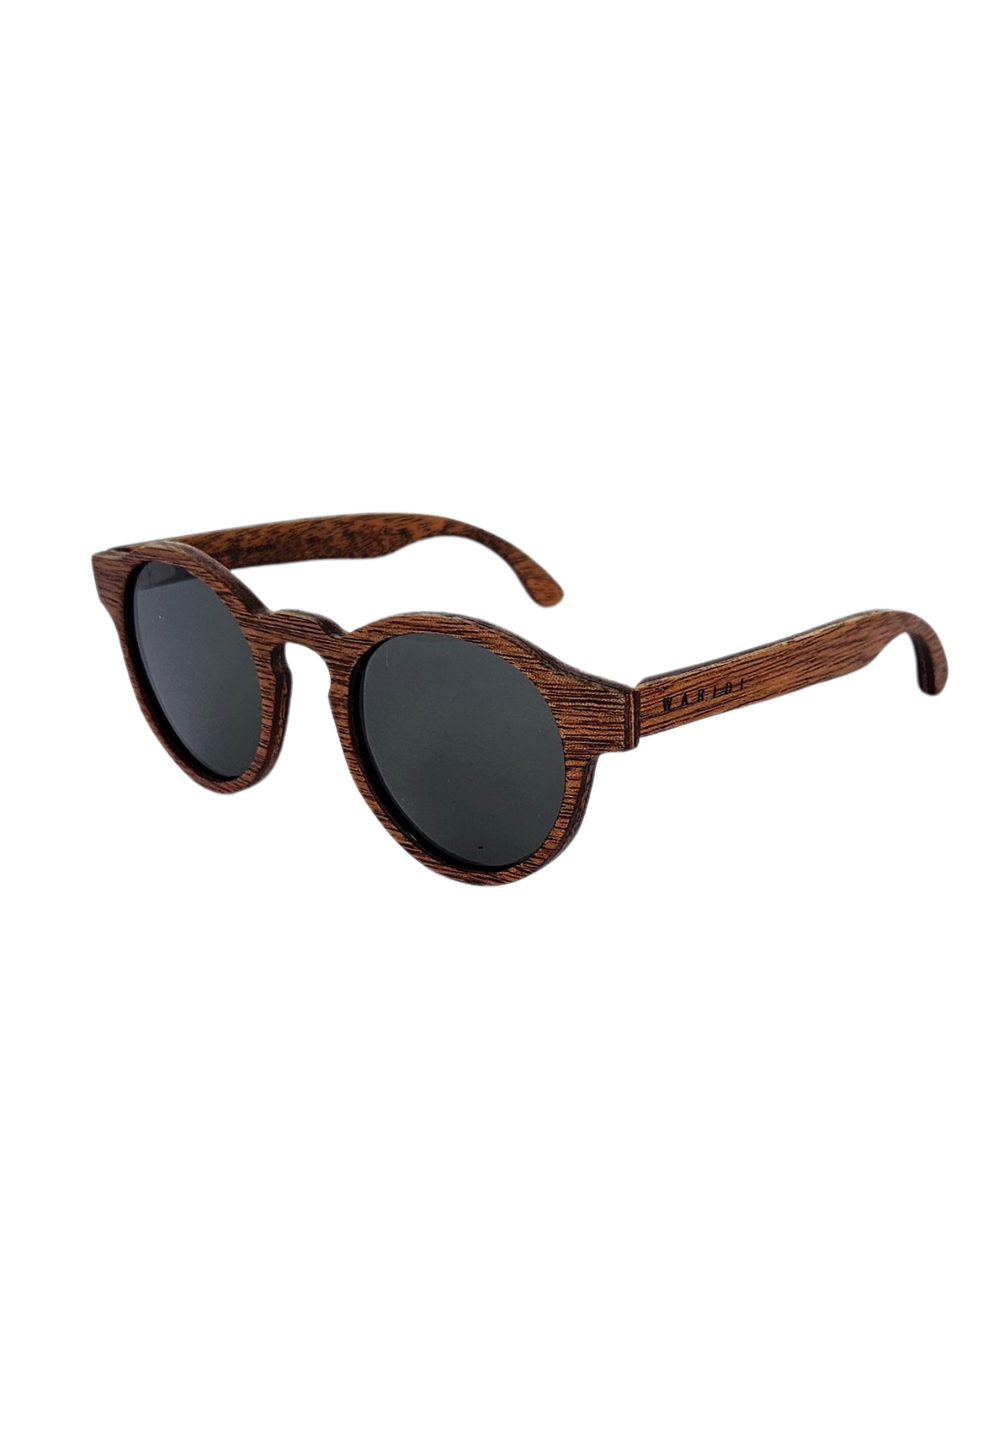 Safari sunglasses - Brown Lens